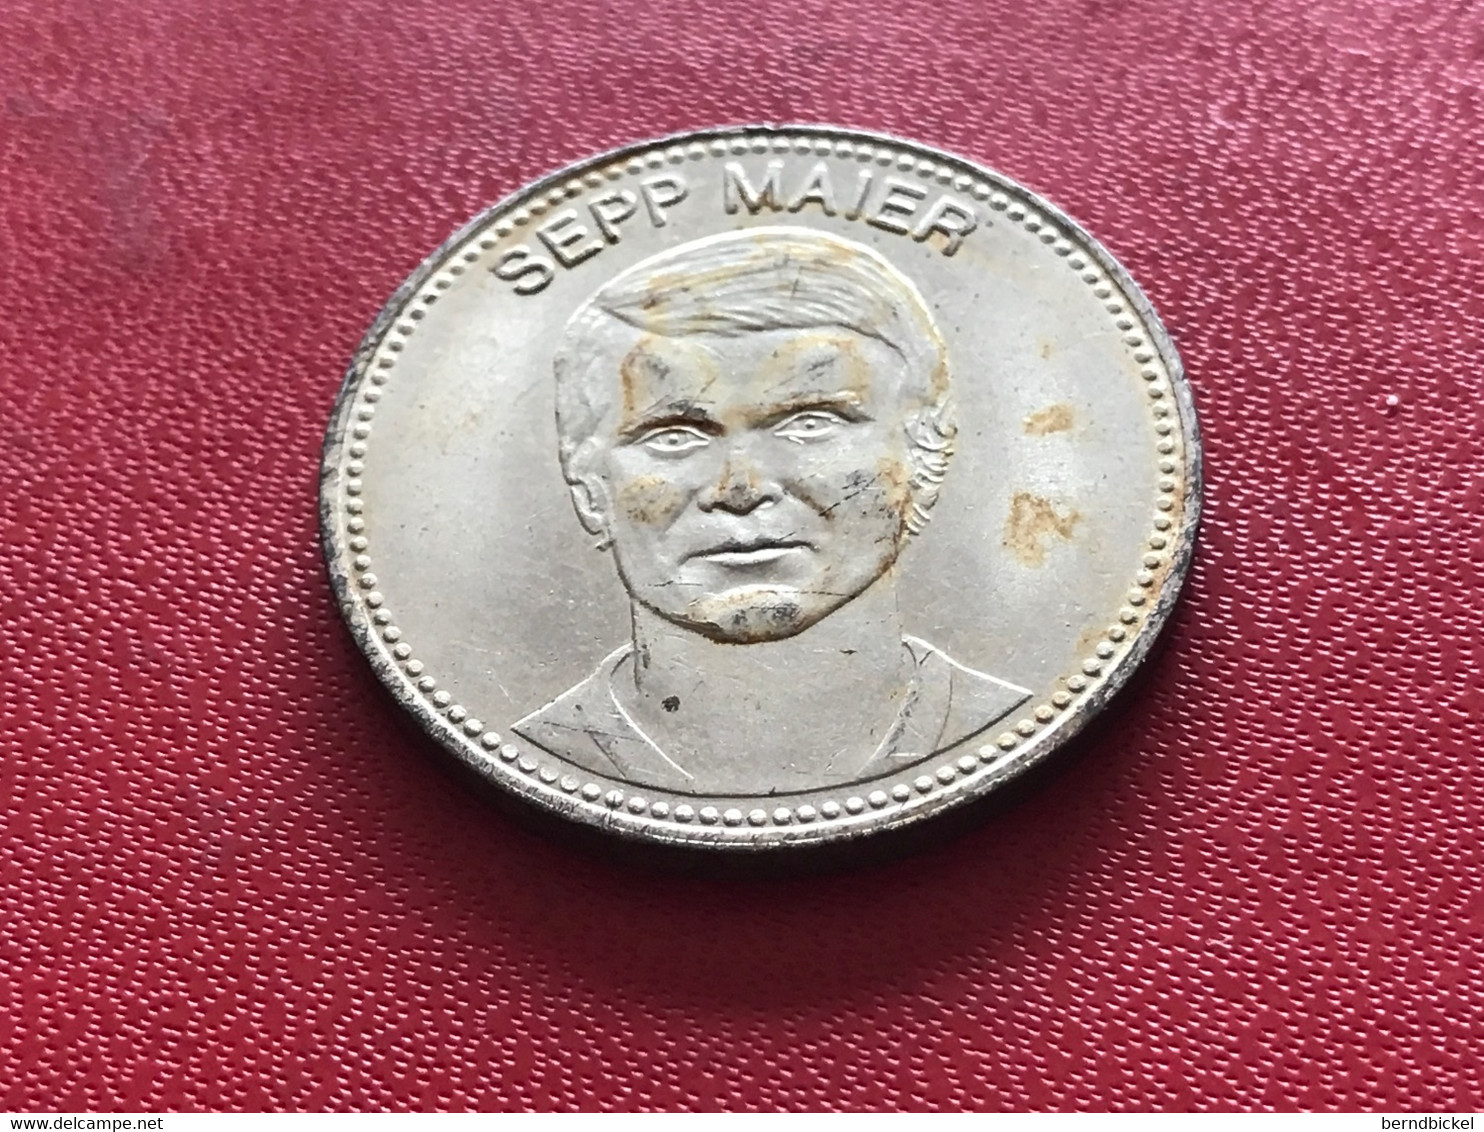 Münze Medaille Shell Mexiko 70 Sepp Maier - Souvenir-Medaille (elongated Coins)